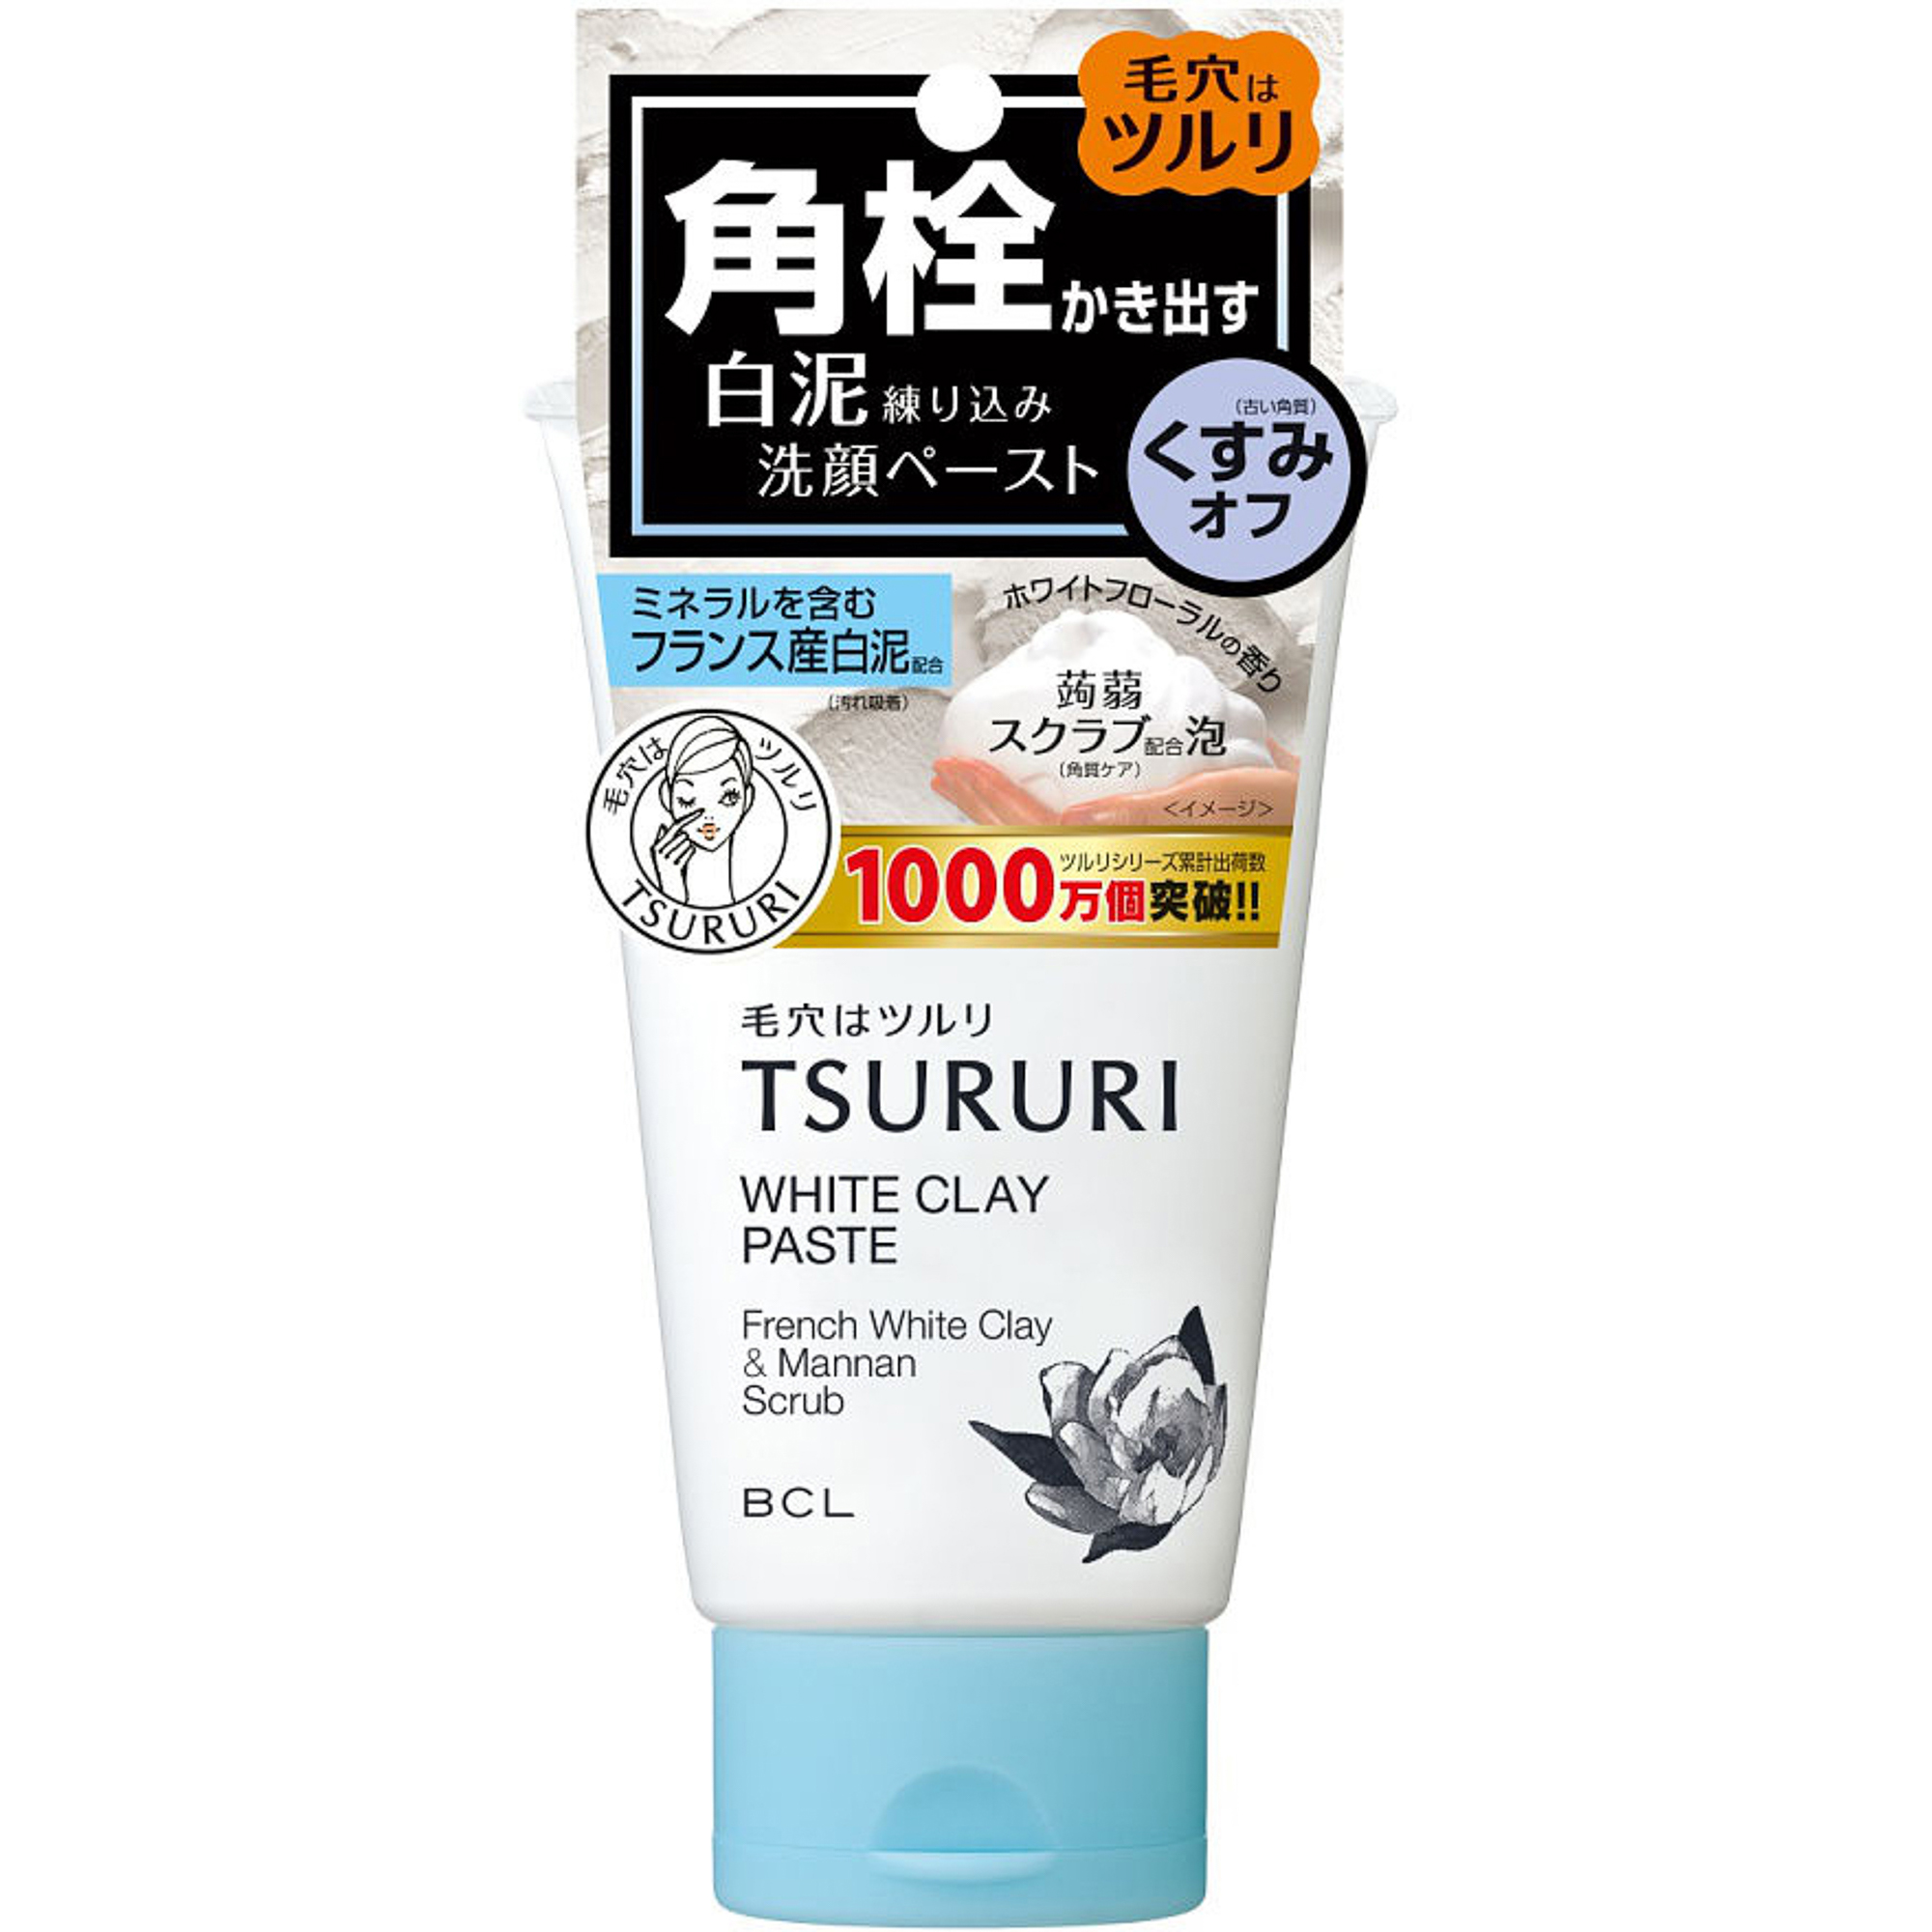 Пенка-скраб Tsururi для глубокого очищения кожи с французской белой глиной и японским маннаном 120 г тоник сода для очищения пор 200мл